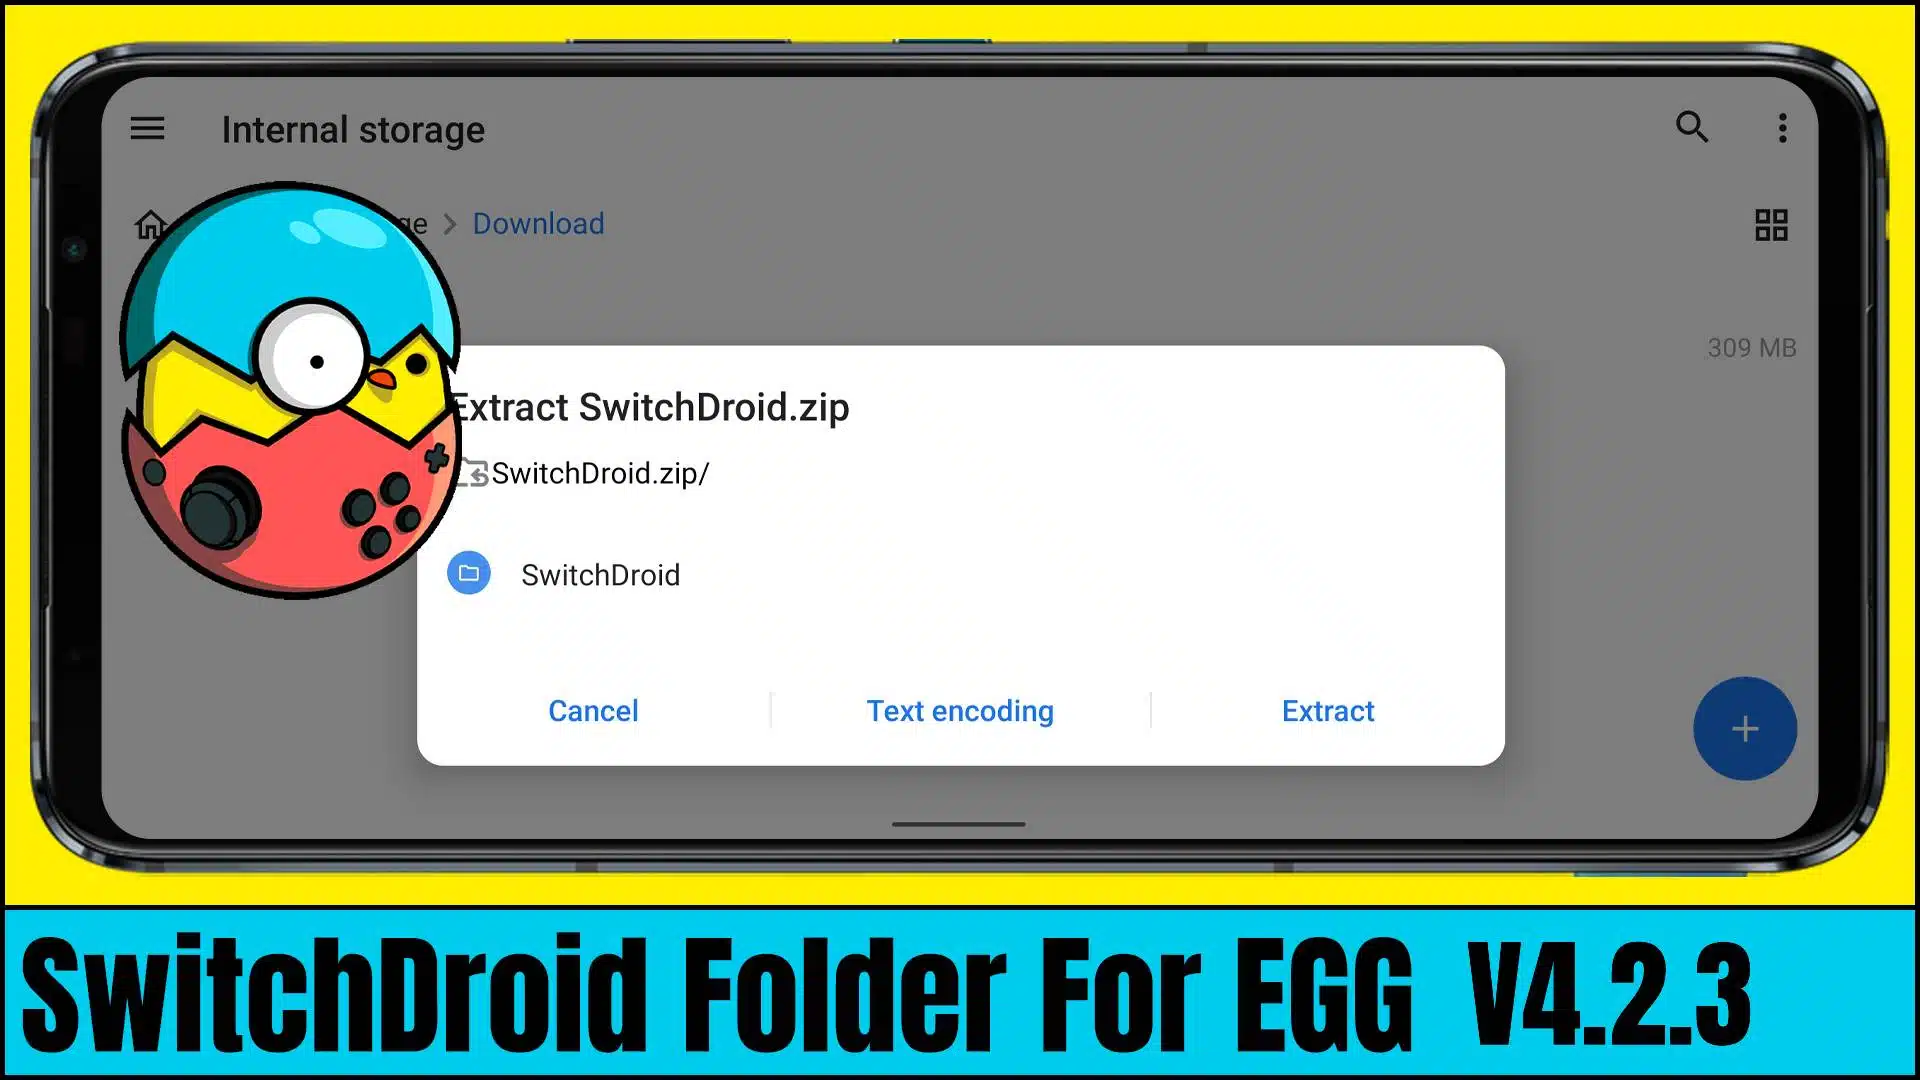 SwitchDroid Folder For EGG NS Emulator v4.2.3